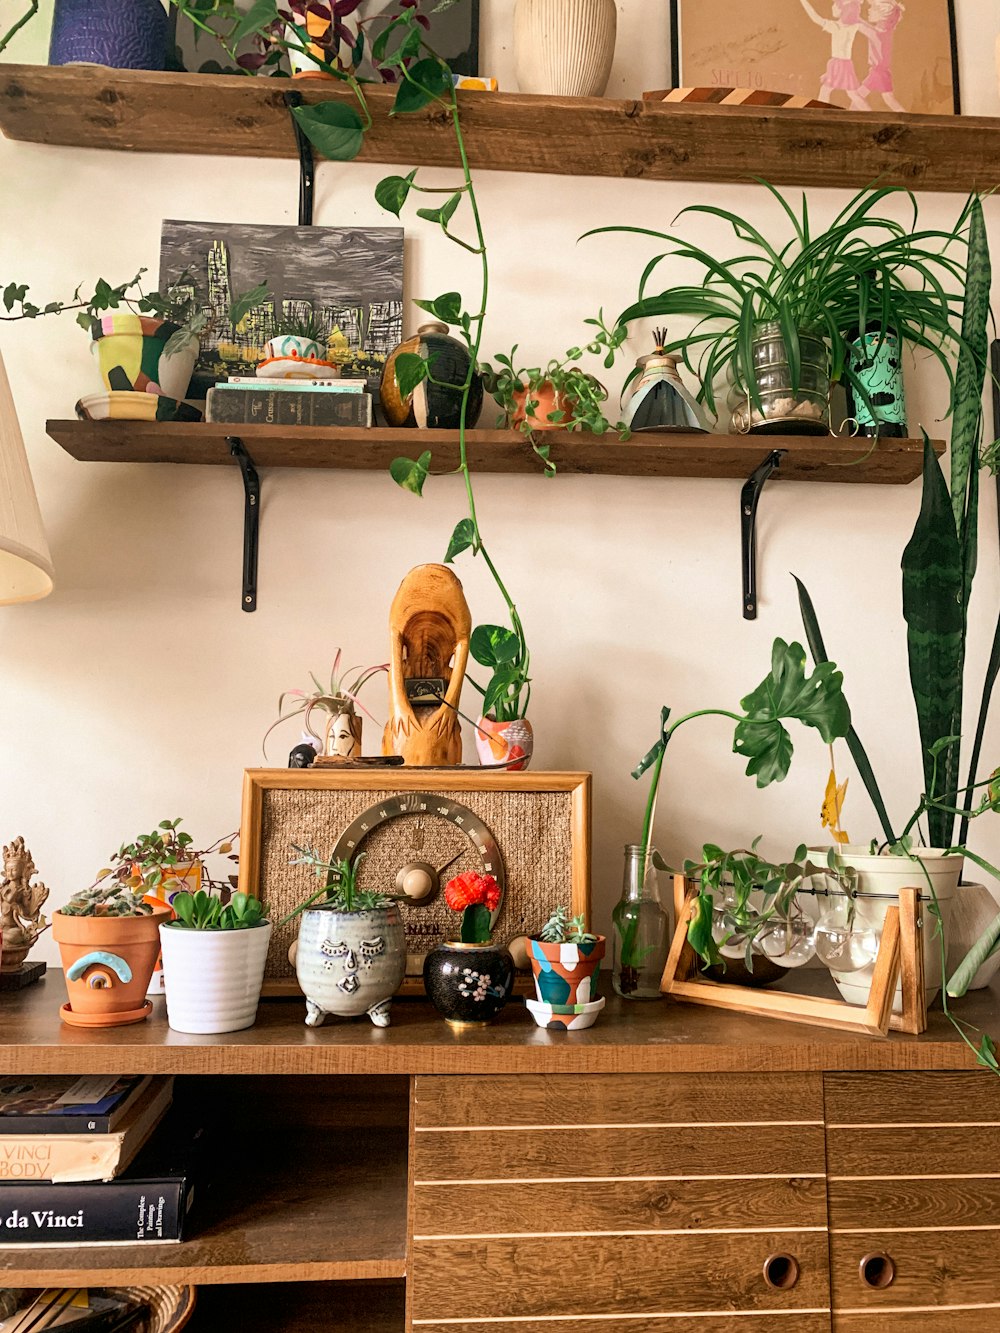 Un escritorio de madera cubierto con muchas plantas en macetas